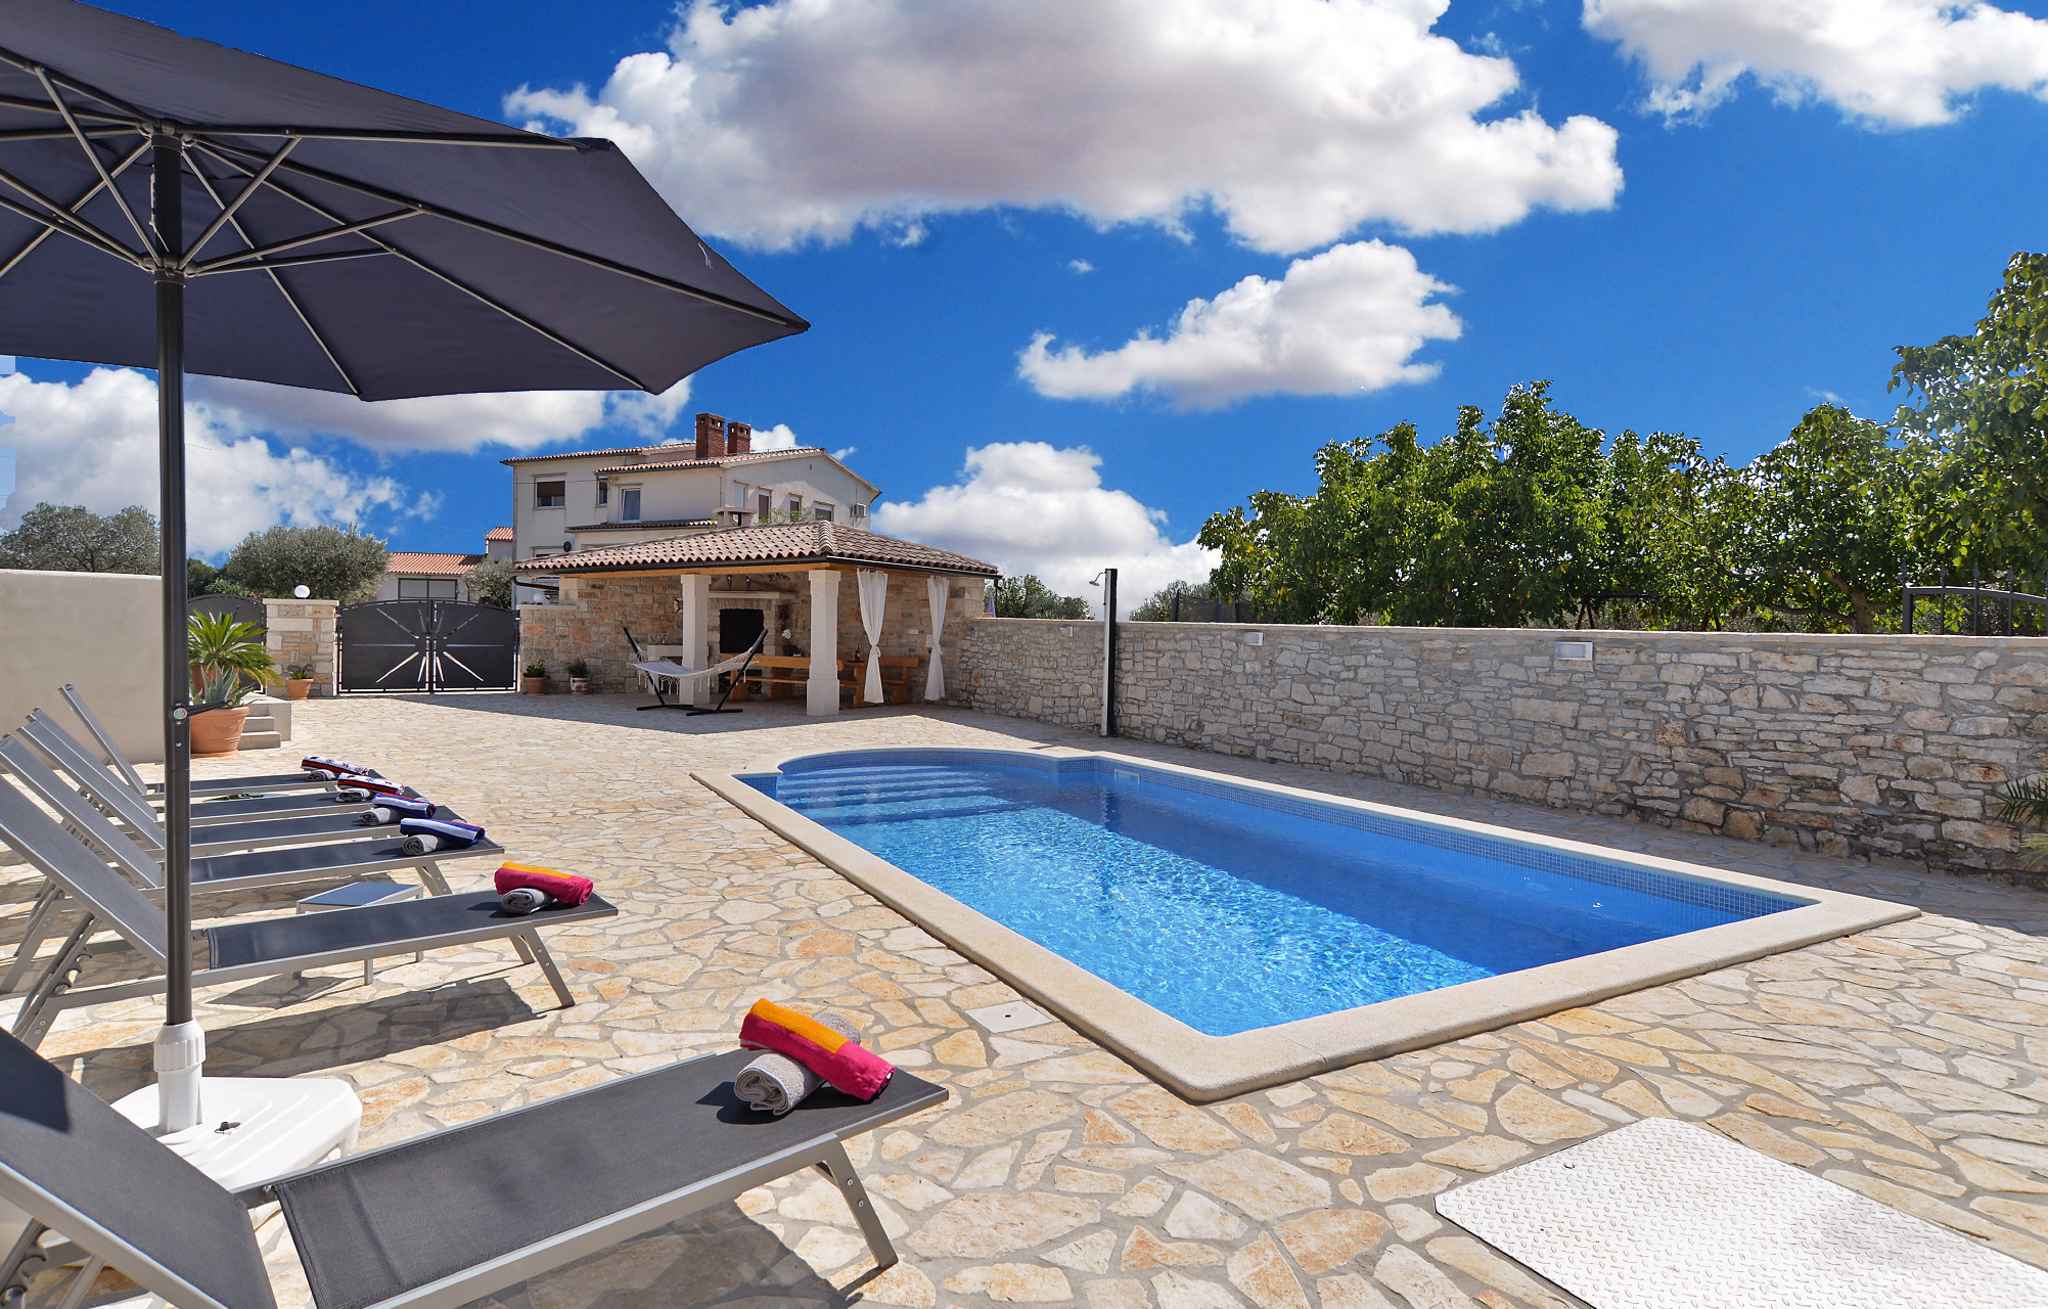 Ferienhaus mit Swimmingpool und Terrasse mit Grill  in Kroatien